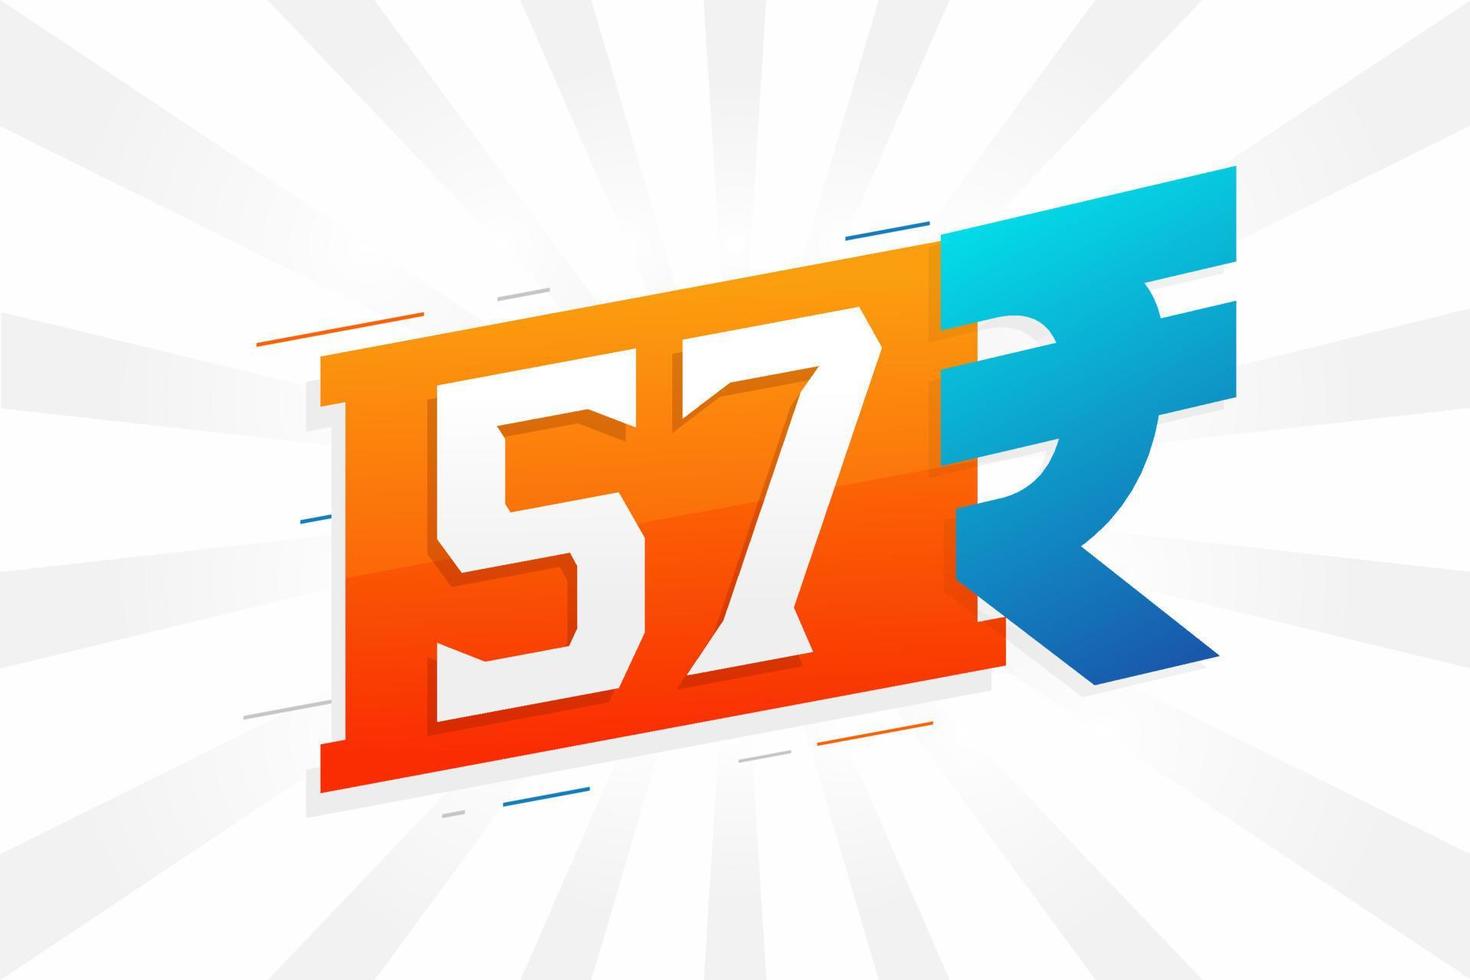 Imagem de vetor de texto em negrito símbolo 57 rupias. ilustração vetorial de sinal de moeda de 57 rupias indianas